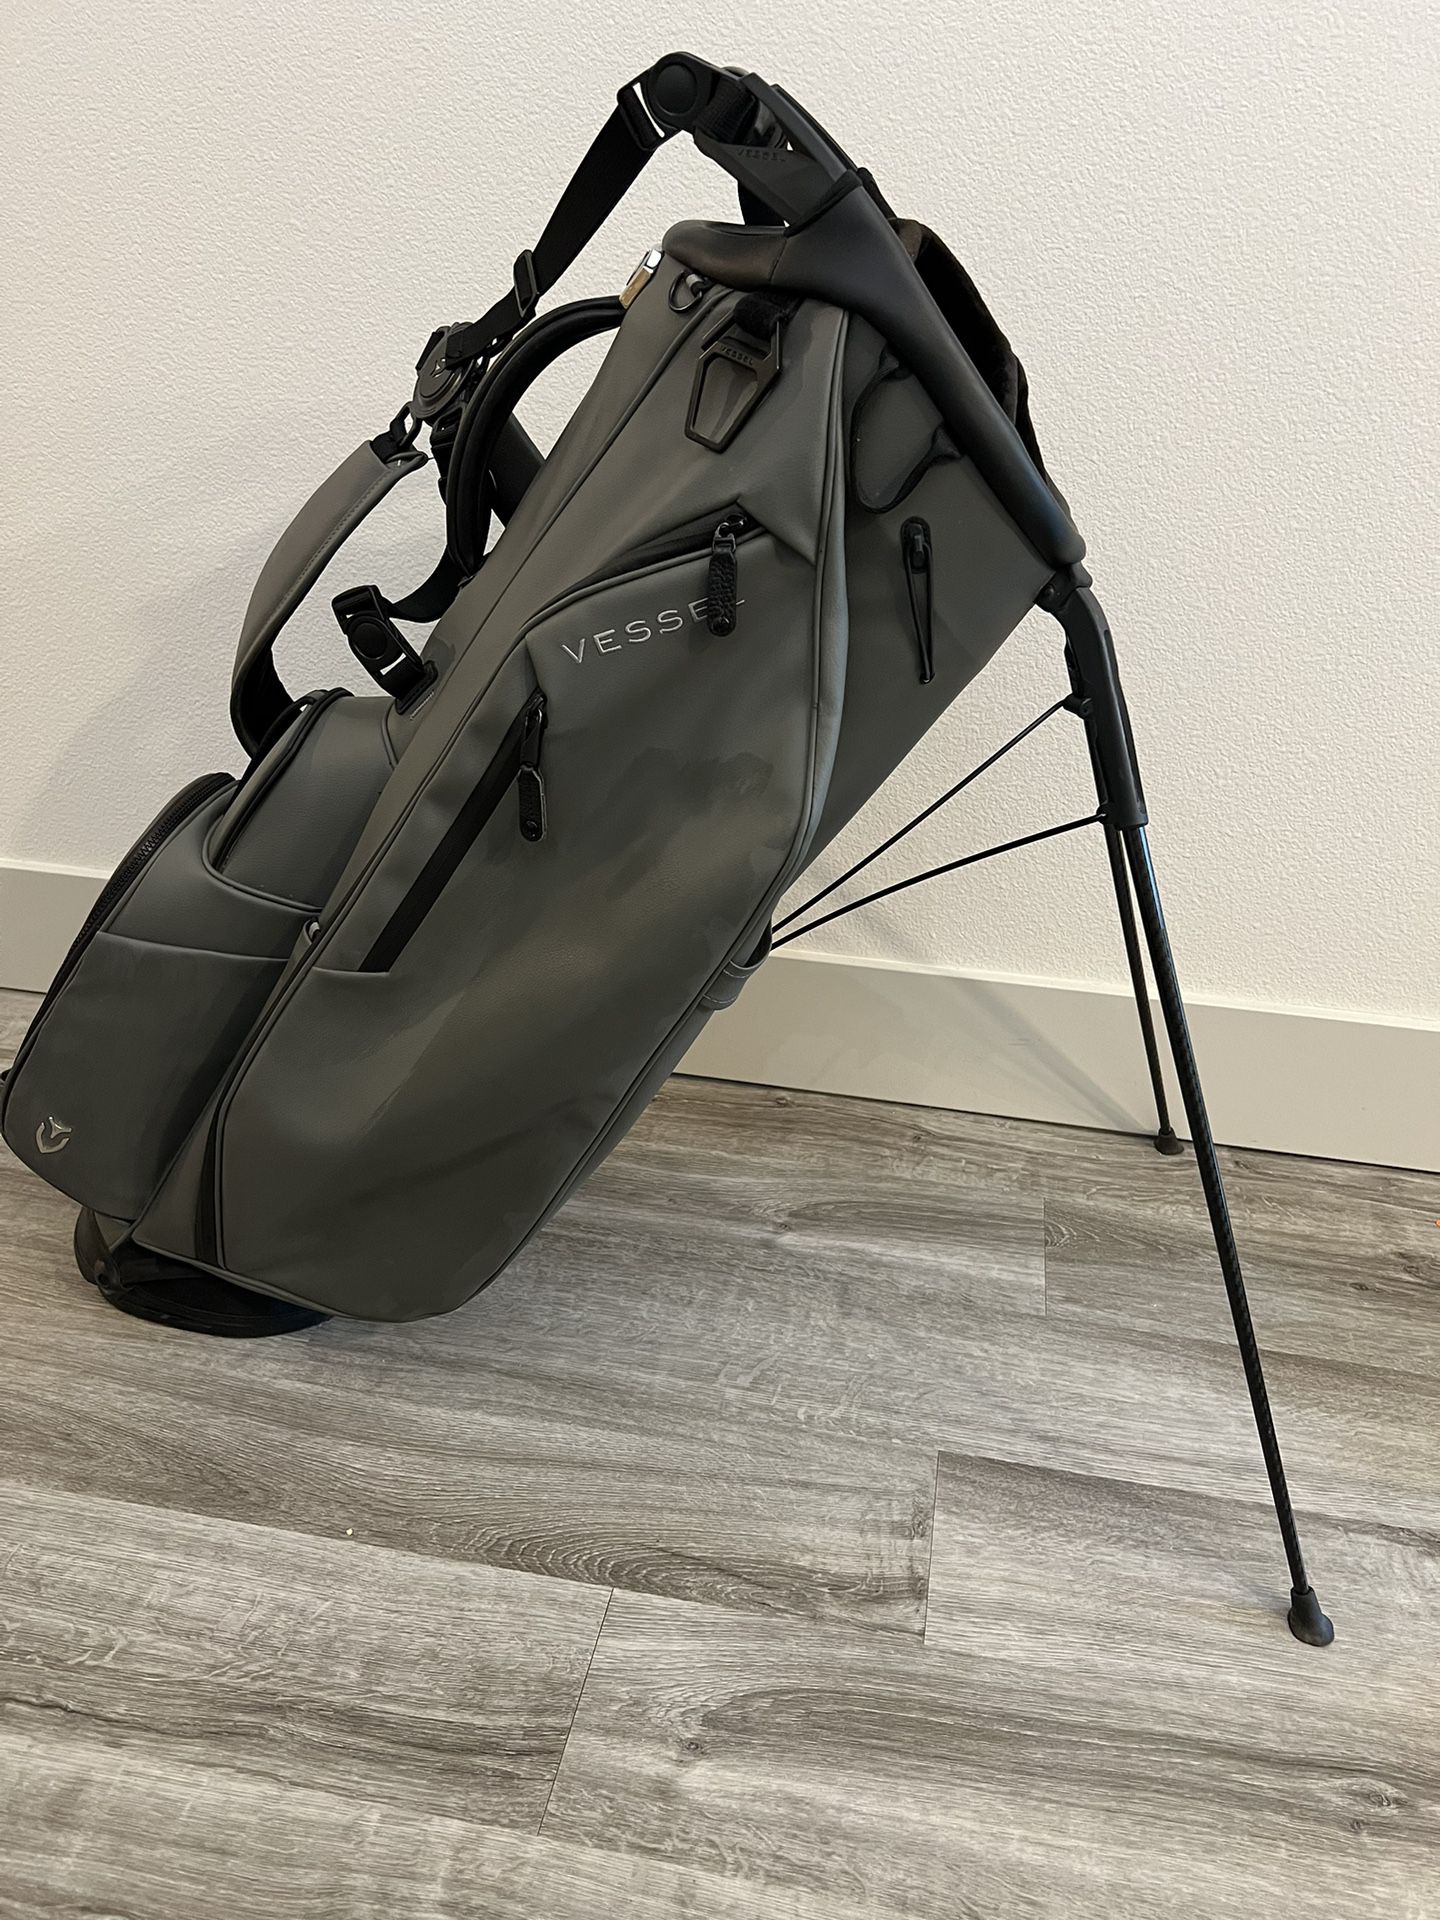 Vessel Player IV Pro Golf Bag